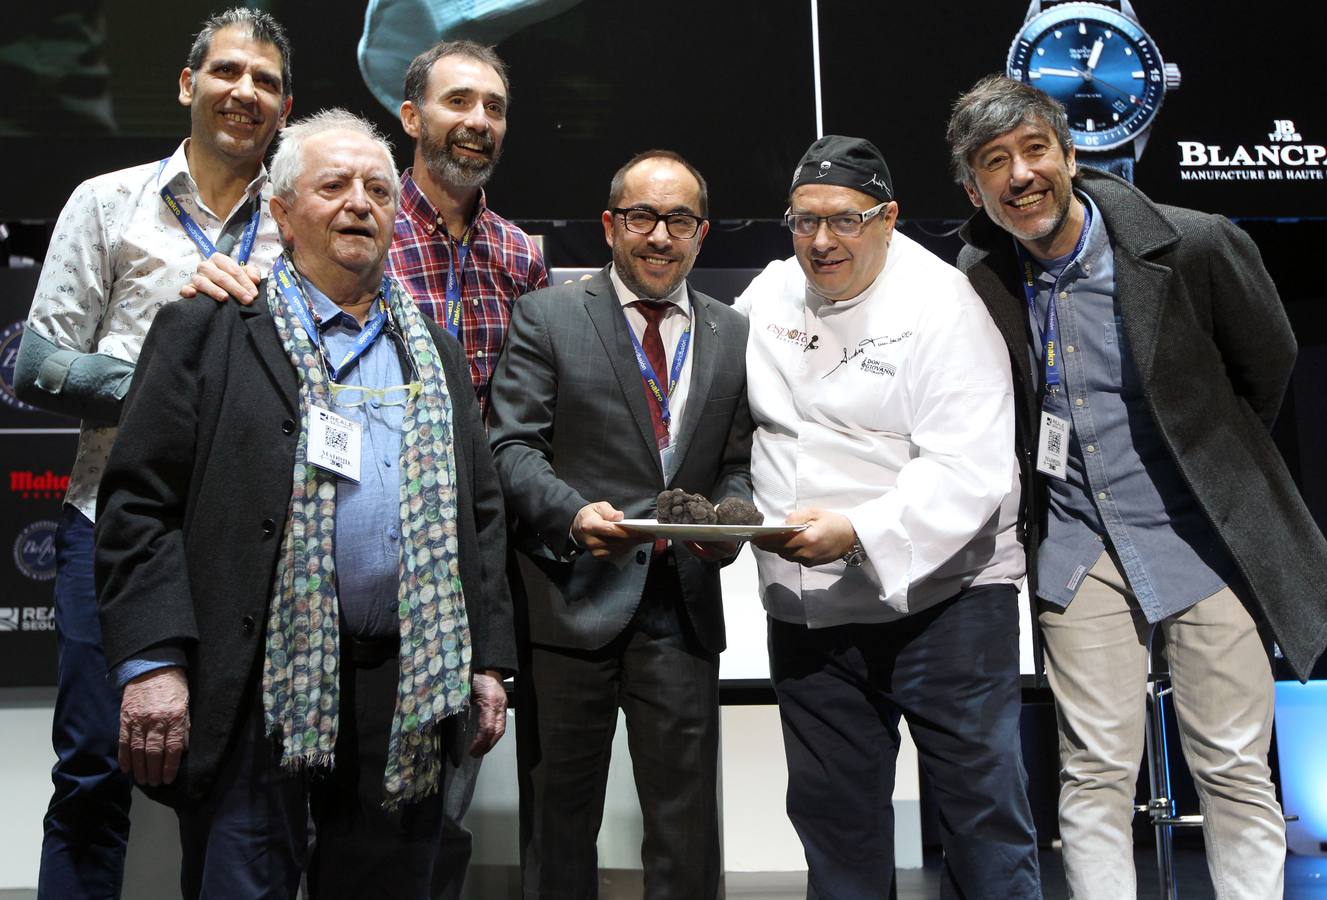 El presidente de la Diputación de Soria, Luis Rey posa junto a los cocineros, Paco Roncero , Juan María Arzak, Andrea Tubarello y los miembros de la productora ATTIC Films, en la subasta de la trufa negra de Soria.